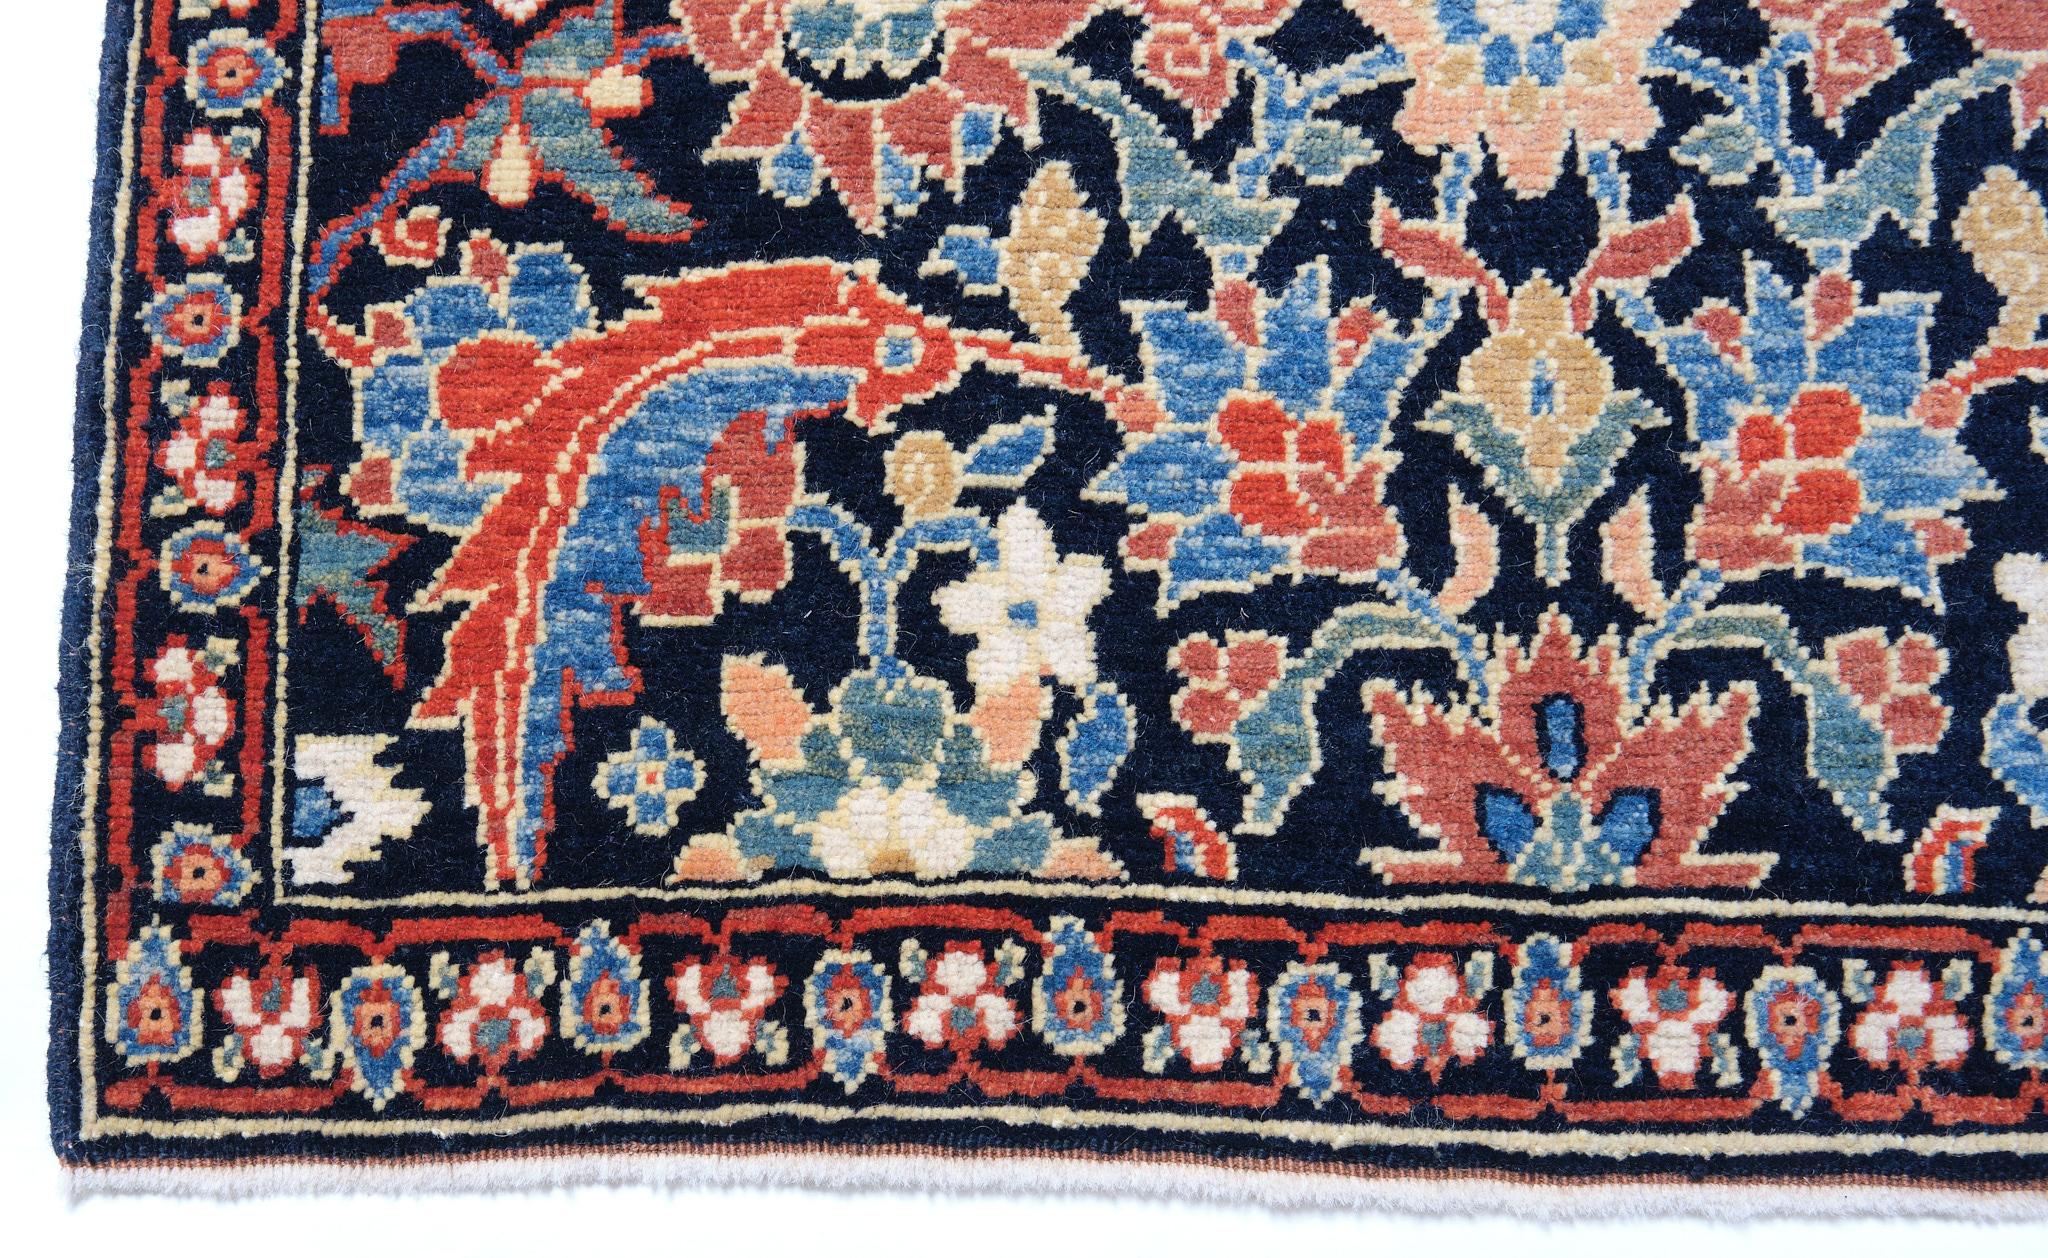 Die Quelle des Teppichs stammt aus dem Buch Antique Rugs of Kurdistan A Historical Legacy of Woven Art, James D. Burns, 2002 nr.31. Dieser Teppich mit blauem Hintergrund zeigt eine Variation des Masi-Awita-Musters (Fische um den Lotus) aus Senna,